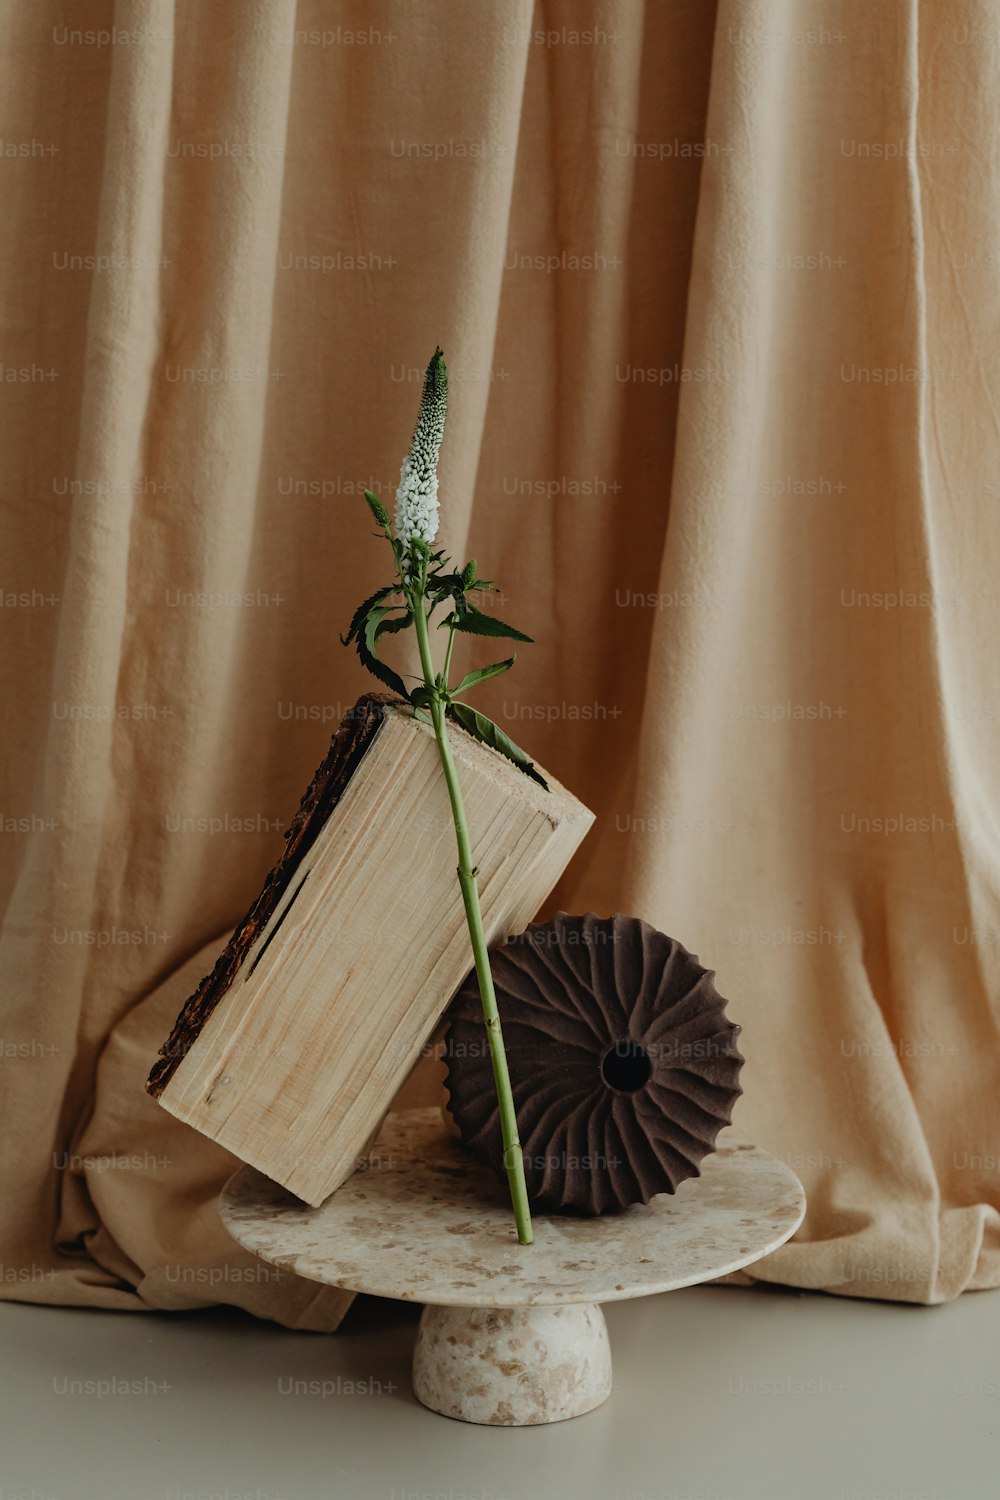 책 위에 앉아있는 꽃